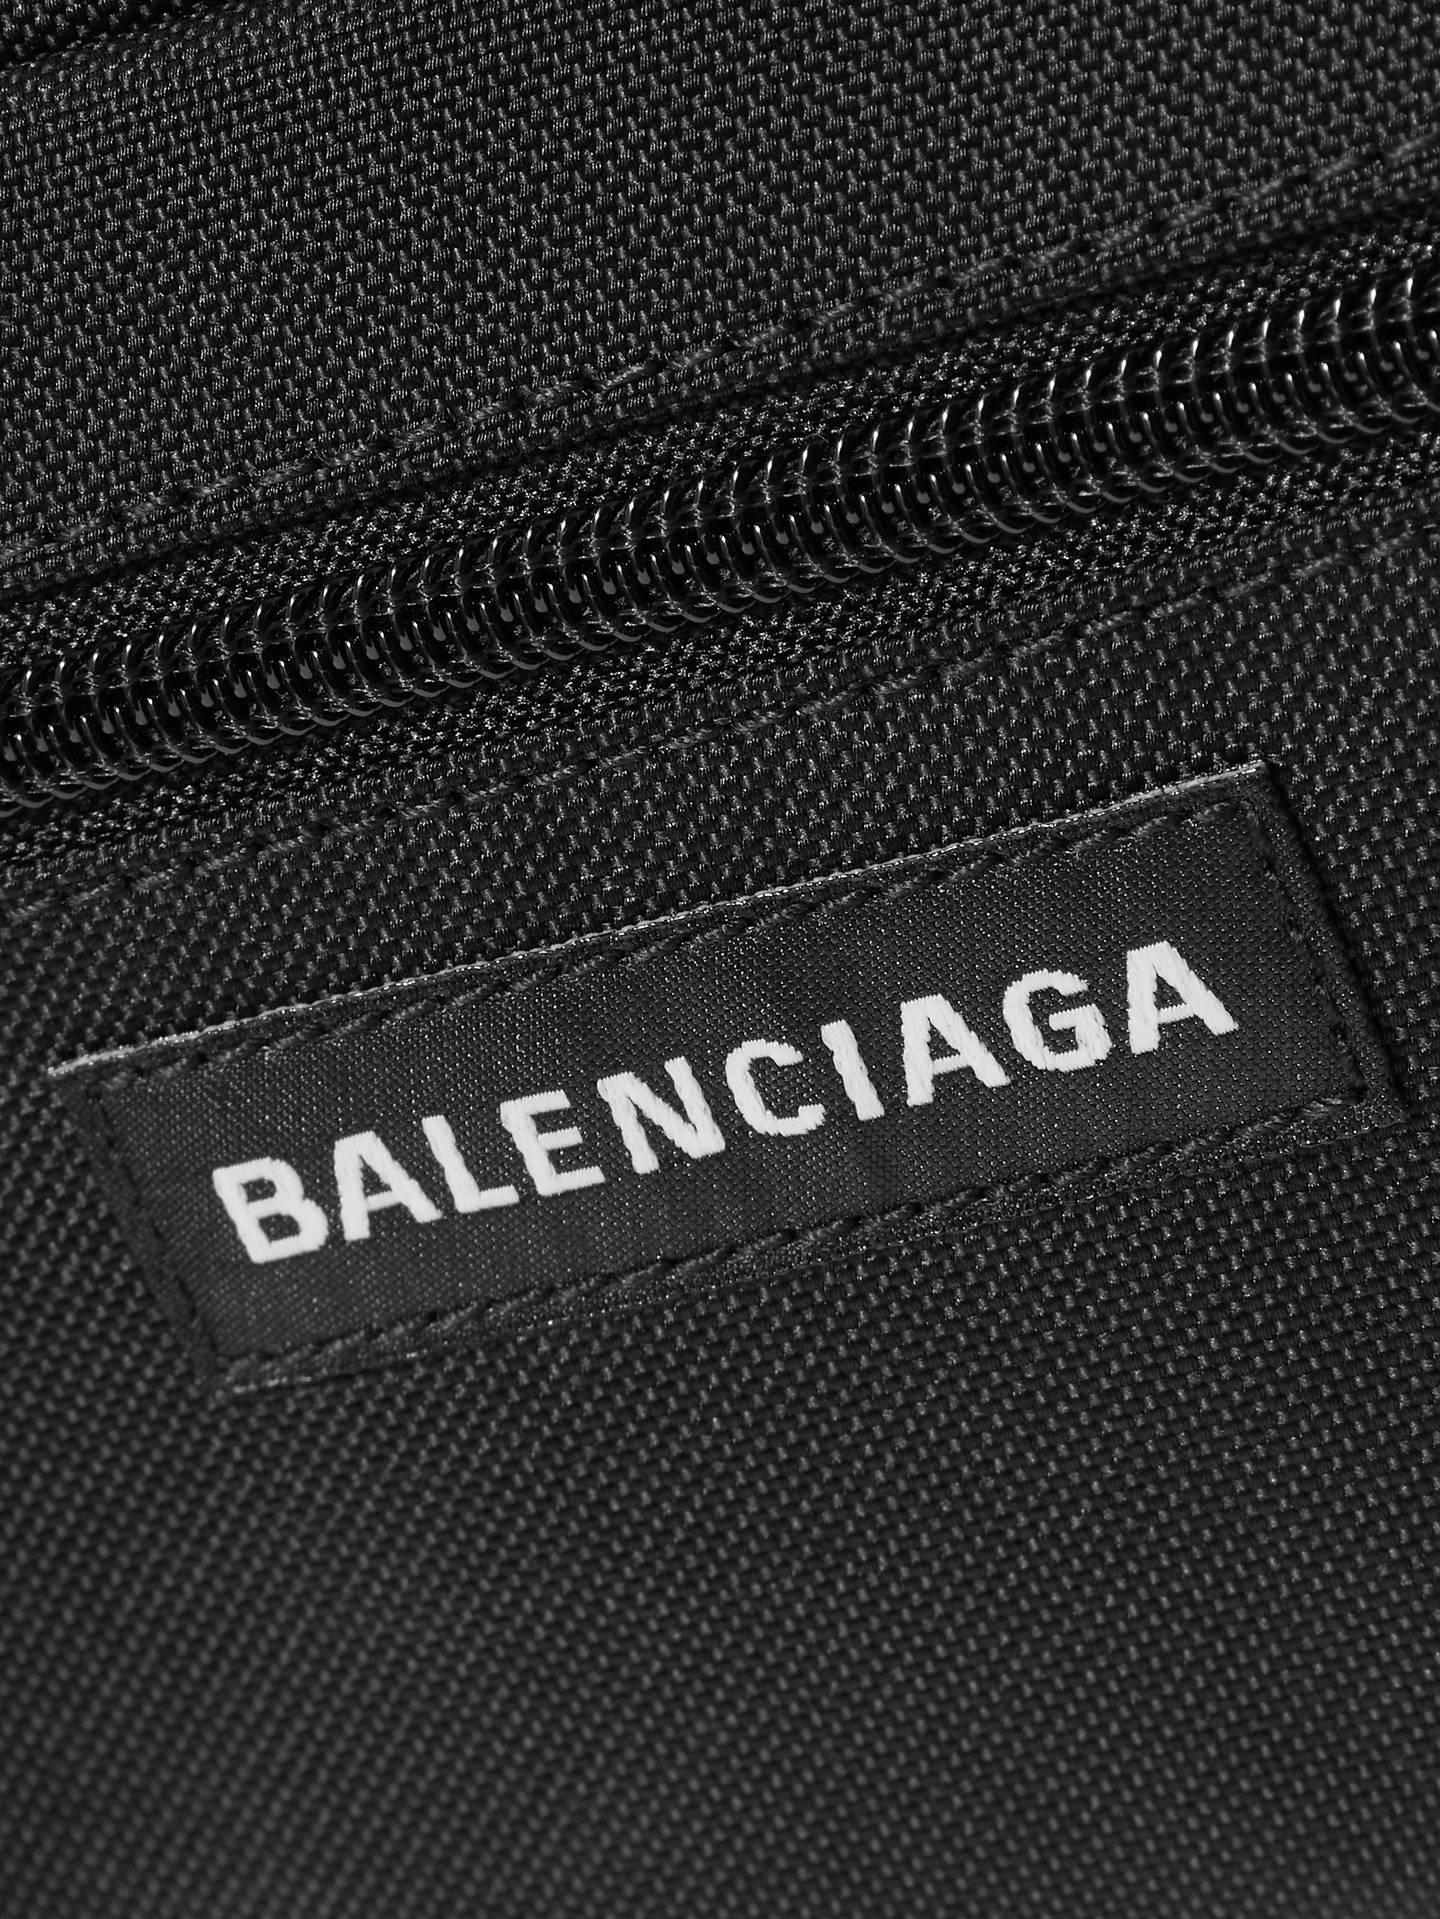 Download Balenciaga Bag Logo Wallpaper